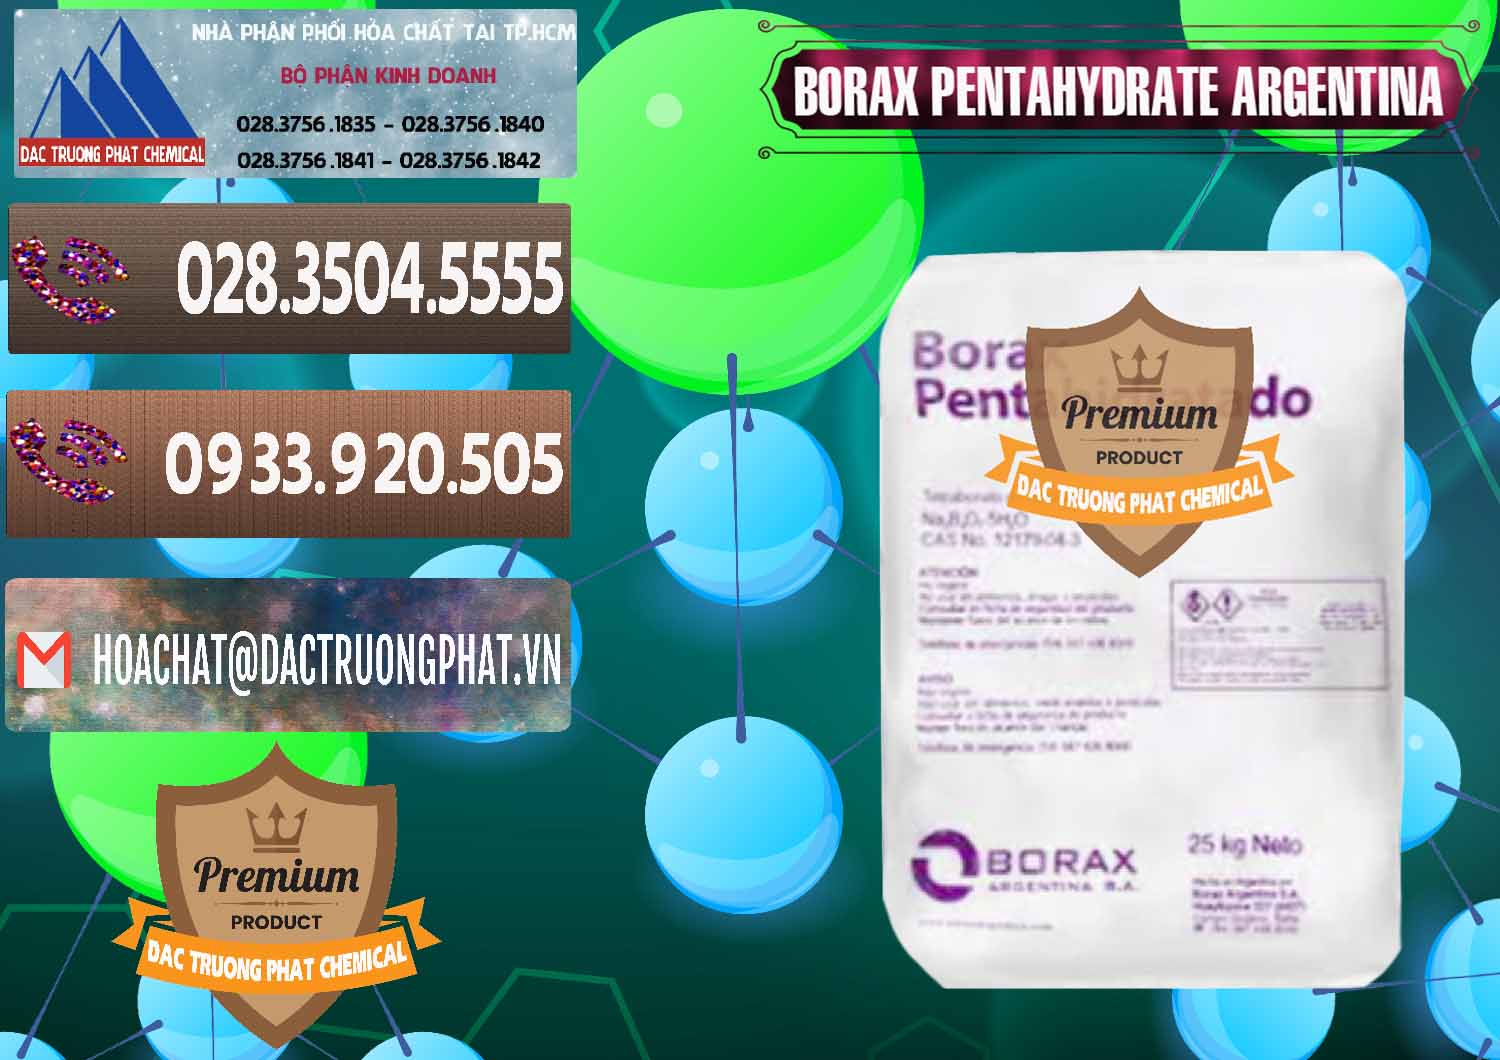 Đơn vị bán - phân phối Borax Pentahydrate Argentina - 0447 - Chuyên cung cấp - phân phối hóa chất tại TP.HCM - hoachatviet.net